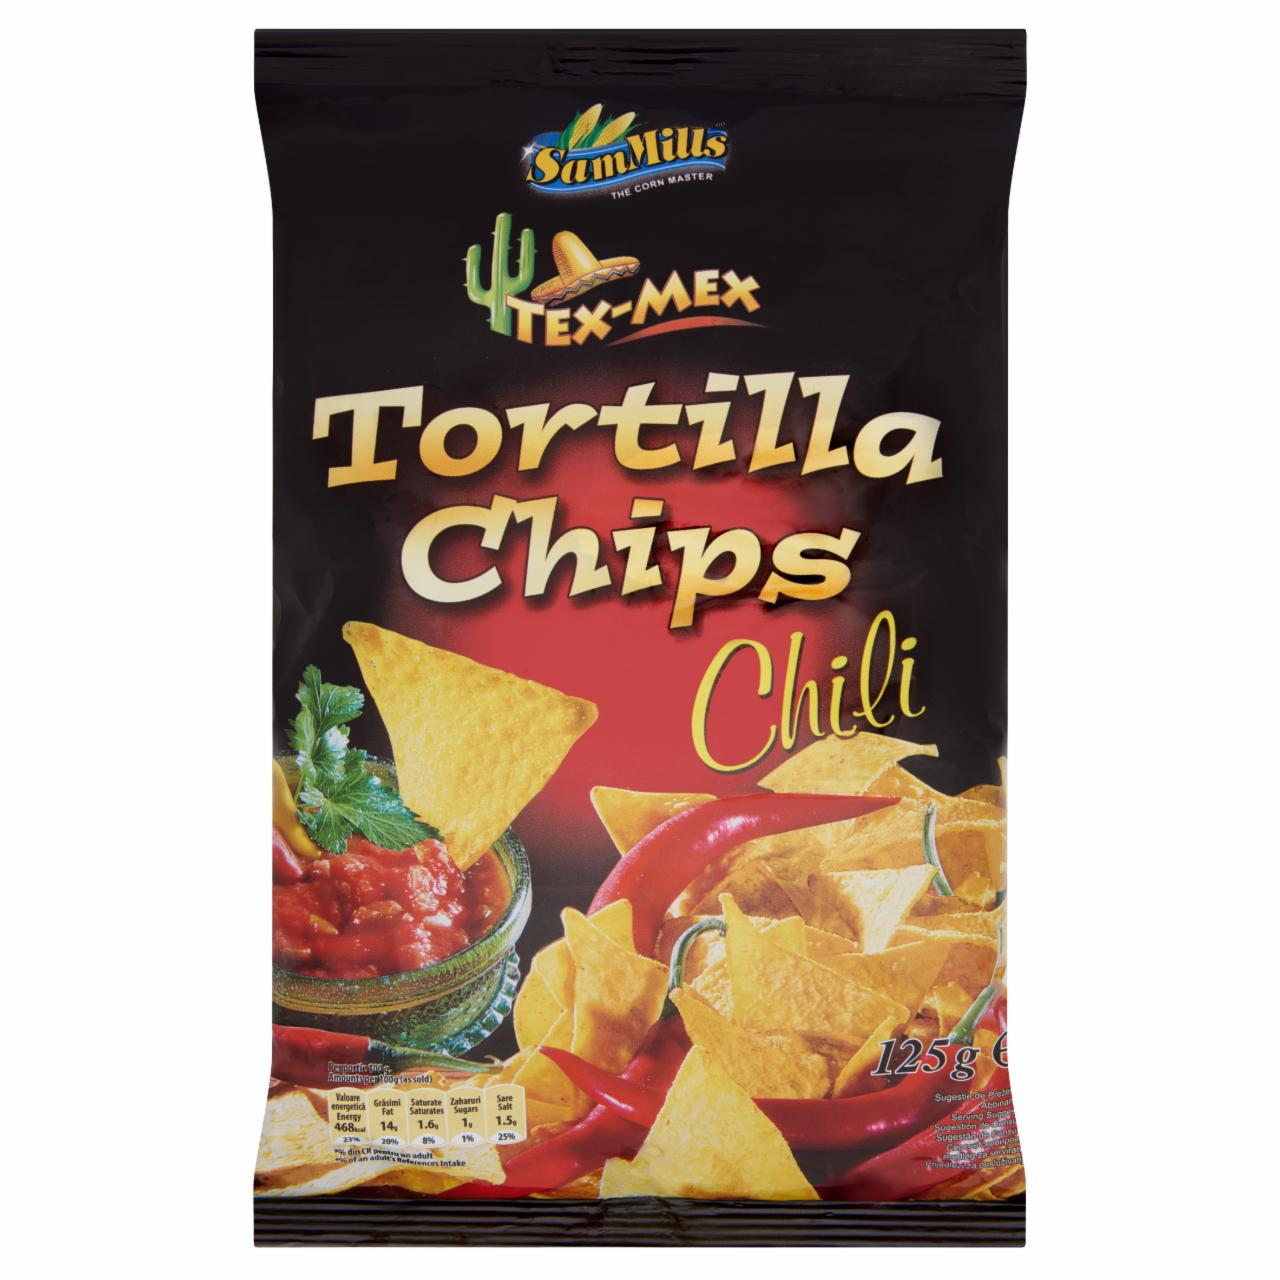 Képek - Sam Mills Tex-Mex chili ízesítésű tortilla chips 125 g